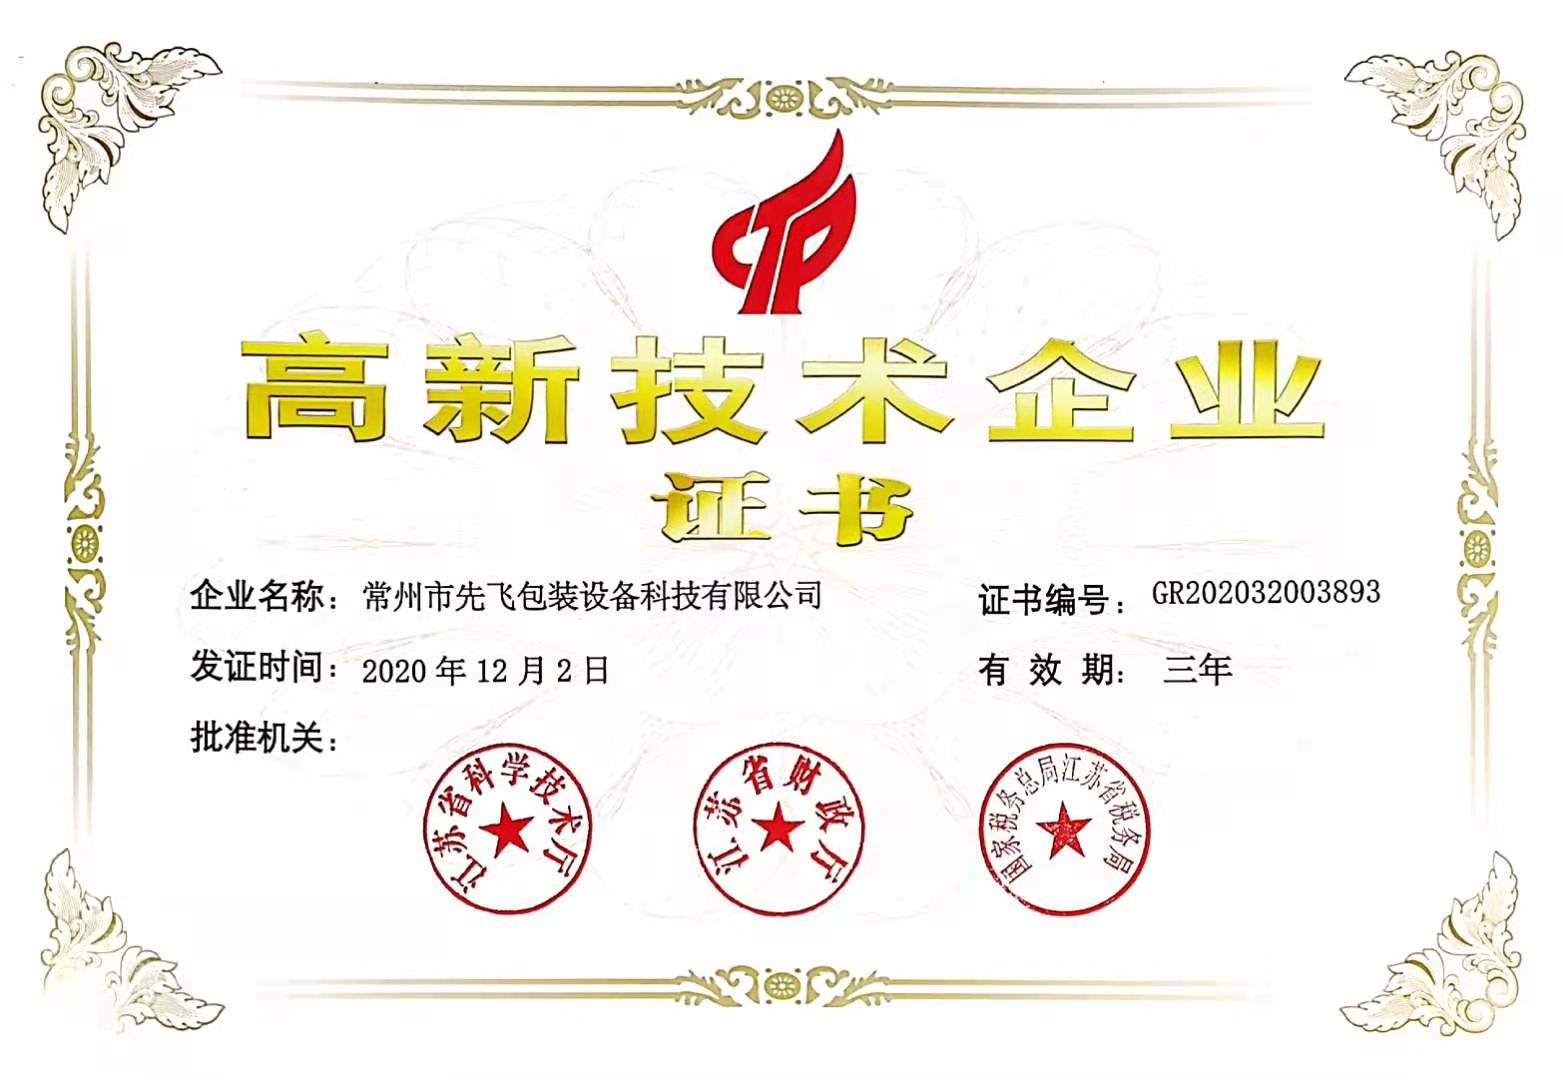 Trung Quốc Changzhou Xianfei Packing Equipment Technology Co., Ltd. Chứng chỉ